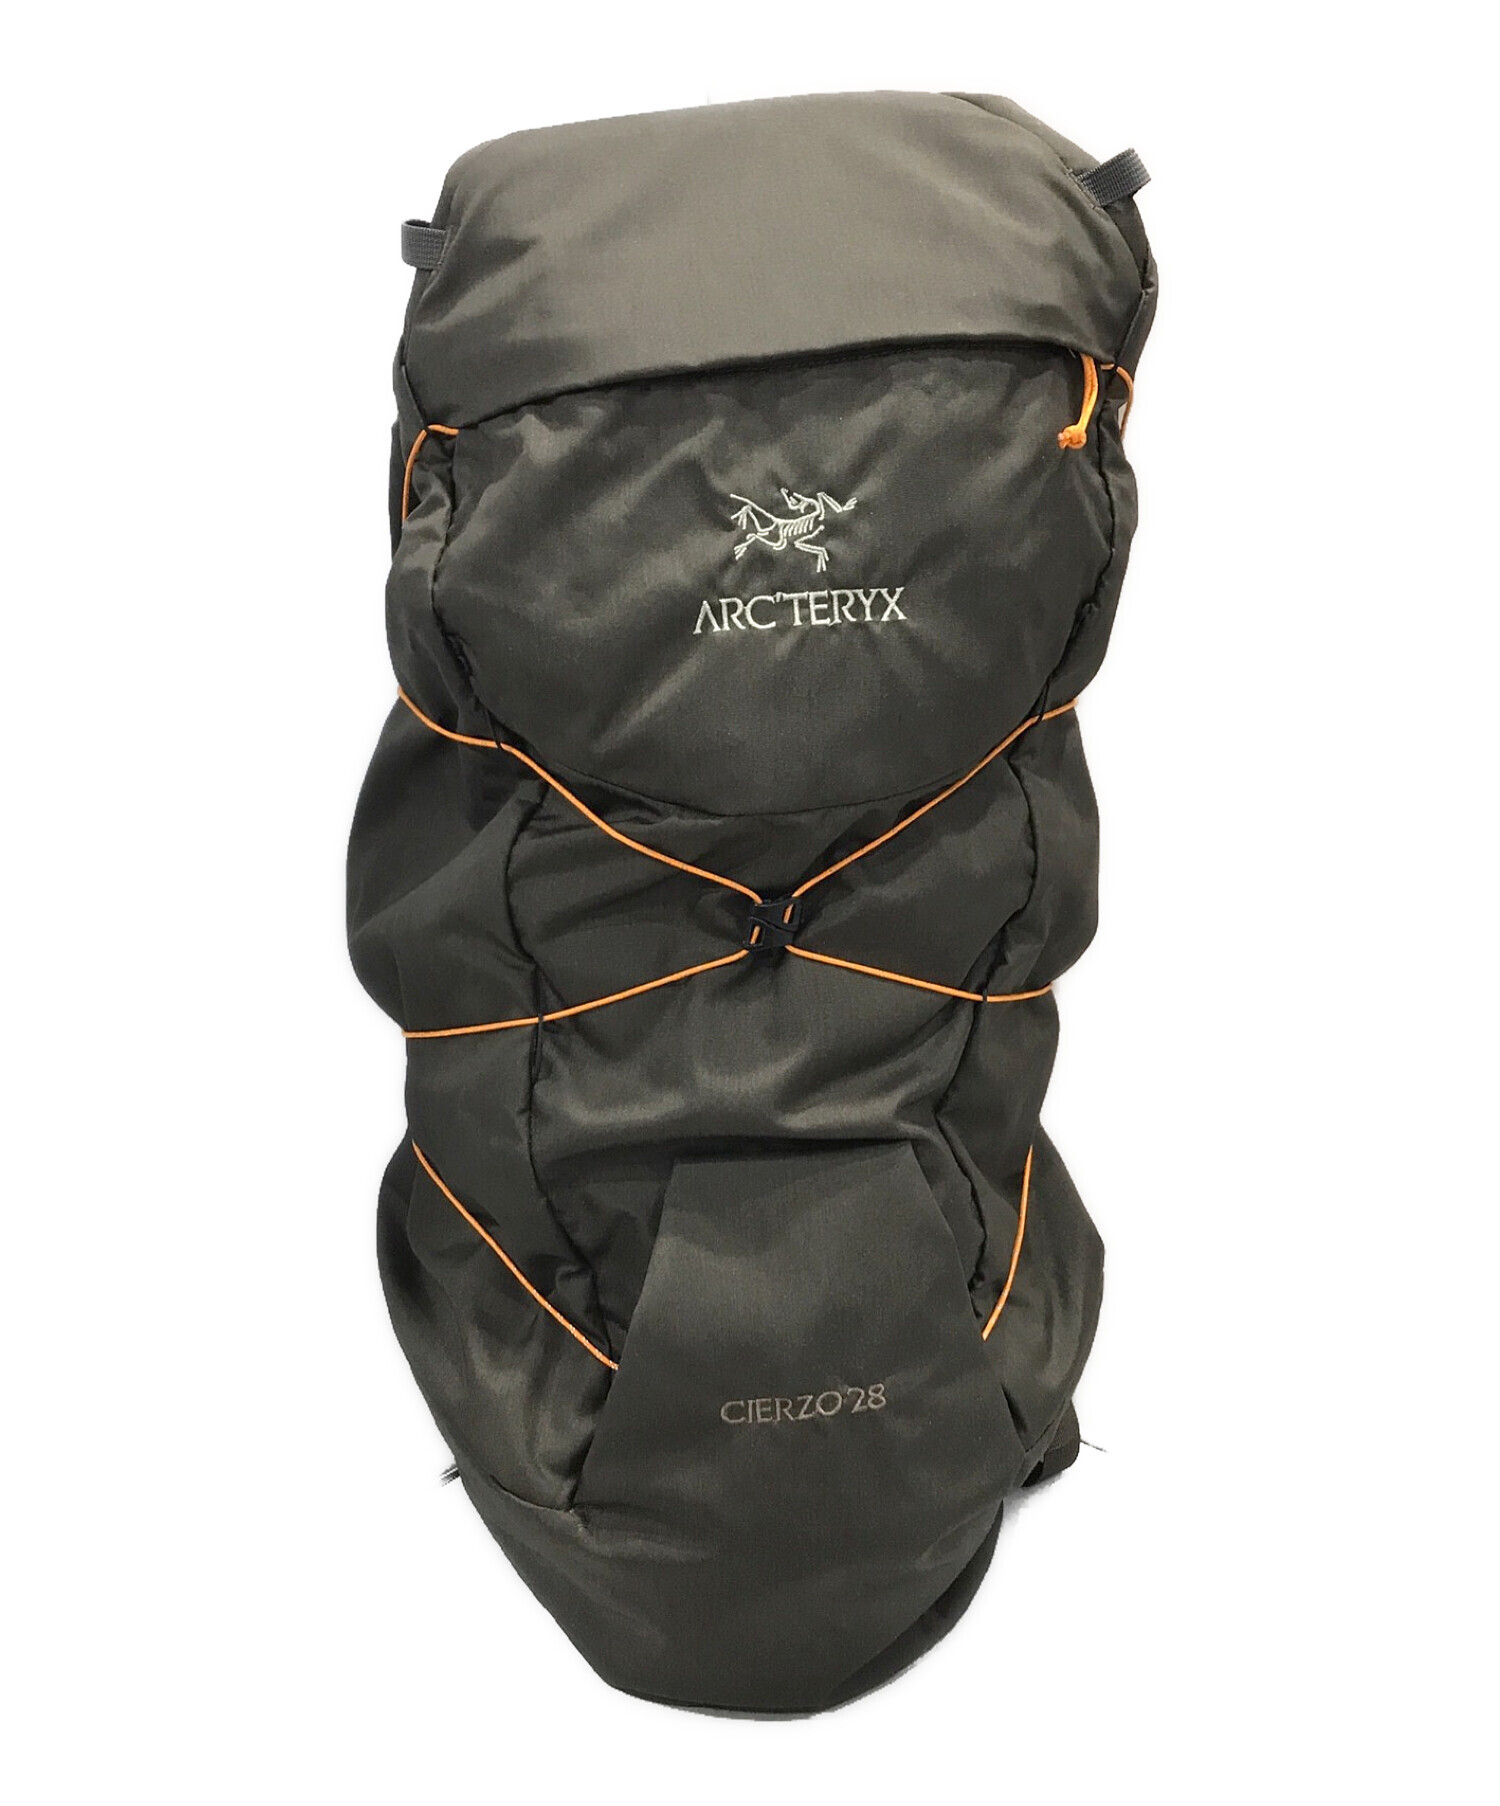 格安正規店Arc’teryxアークテリクスcierzo28 backpack 登山ウェア・アウトドアウェア